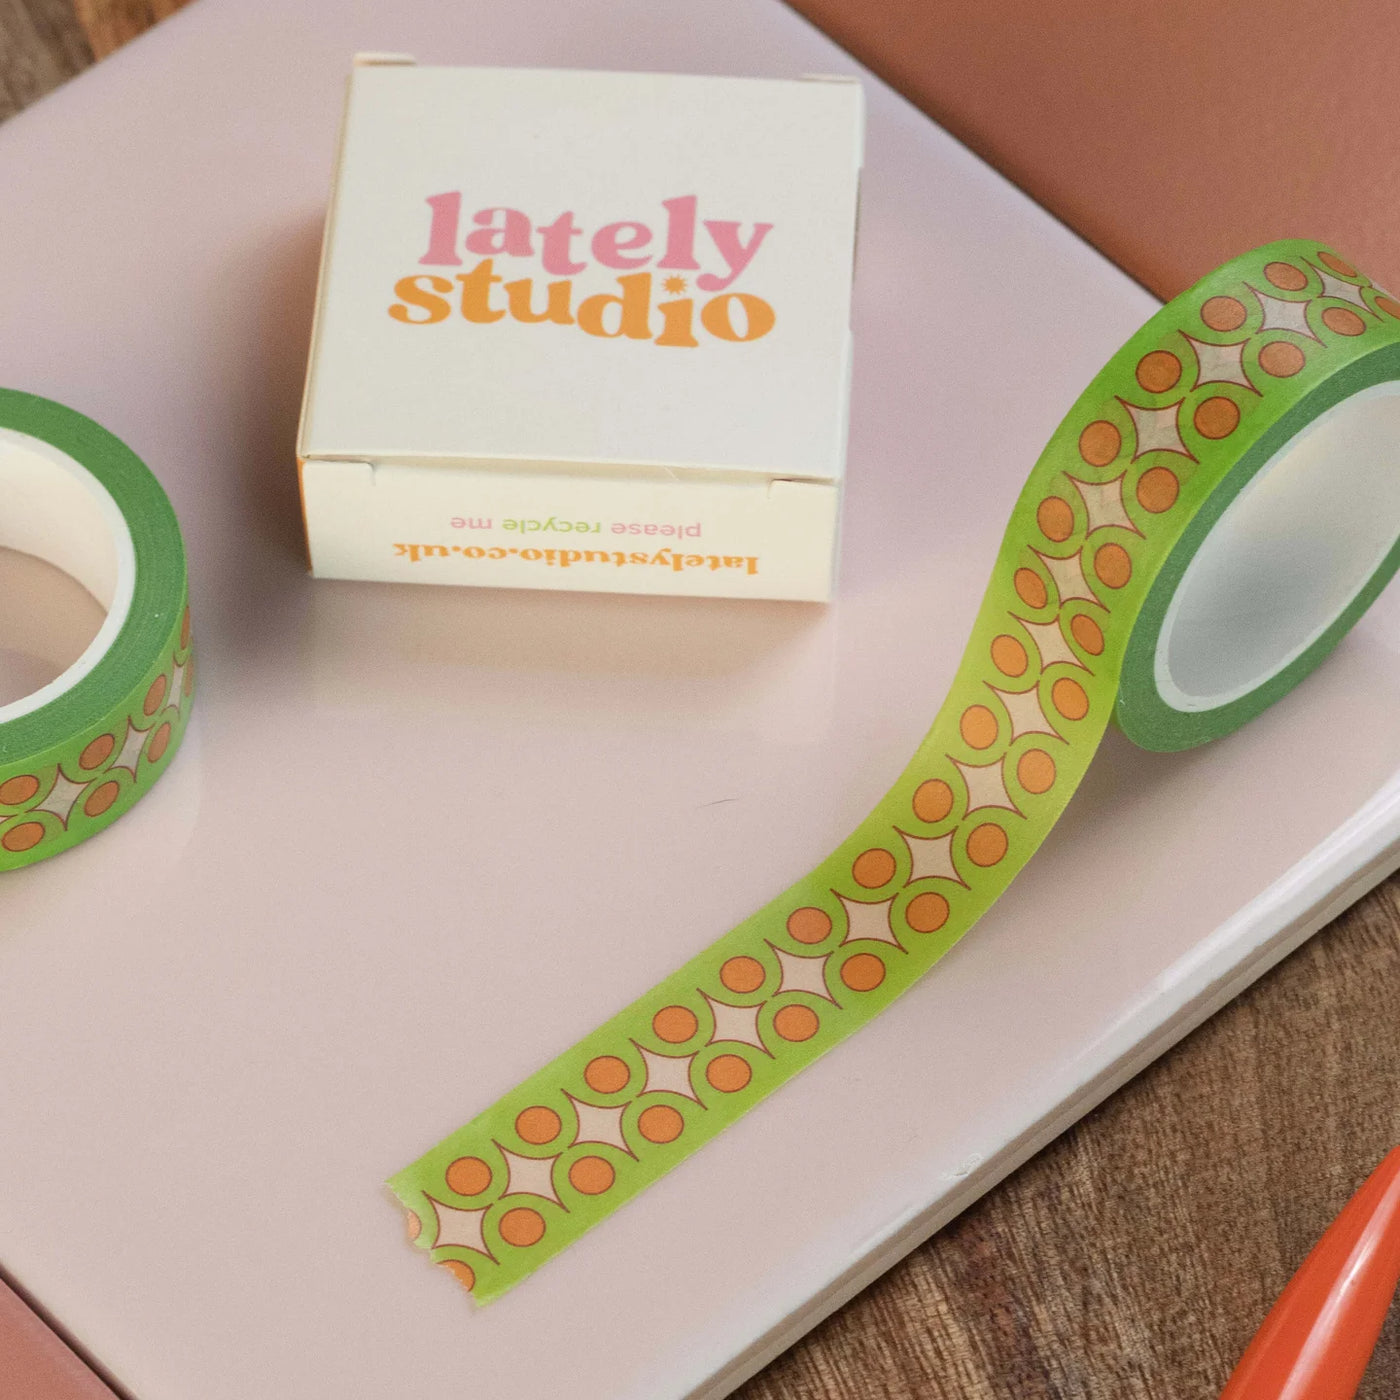 Lately Studio Washi Tape - Radical Giving